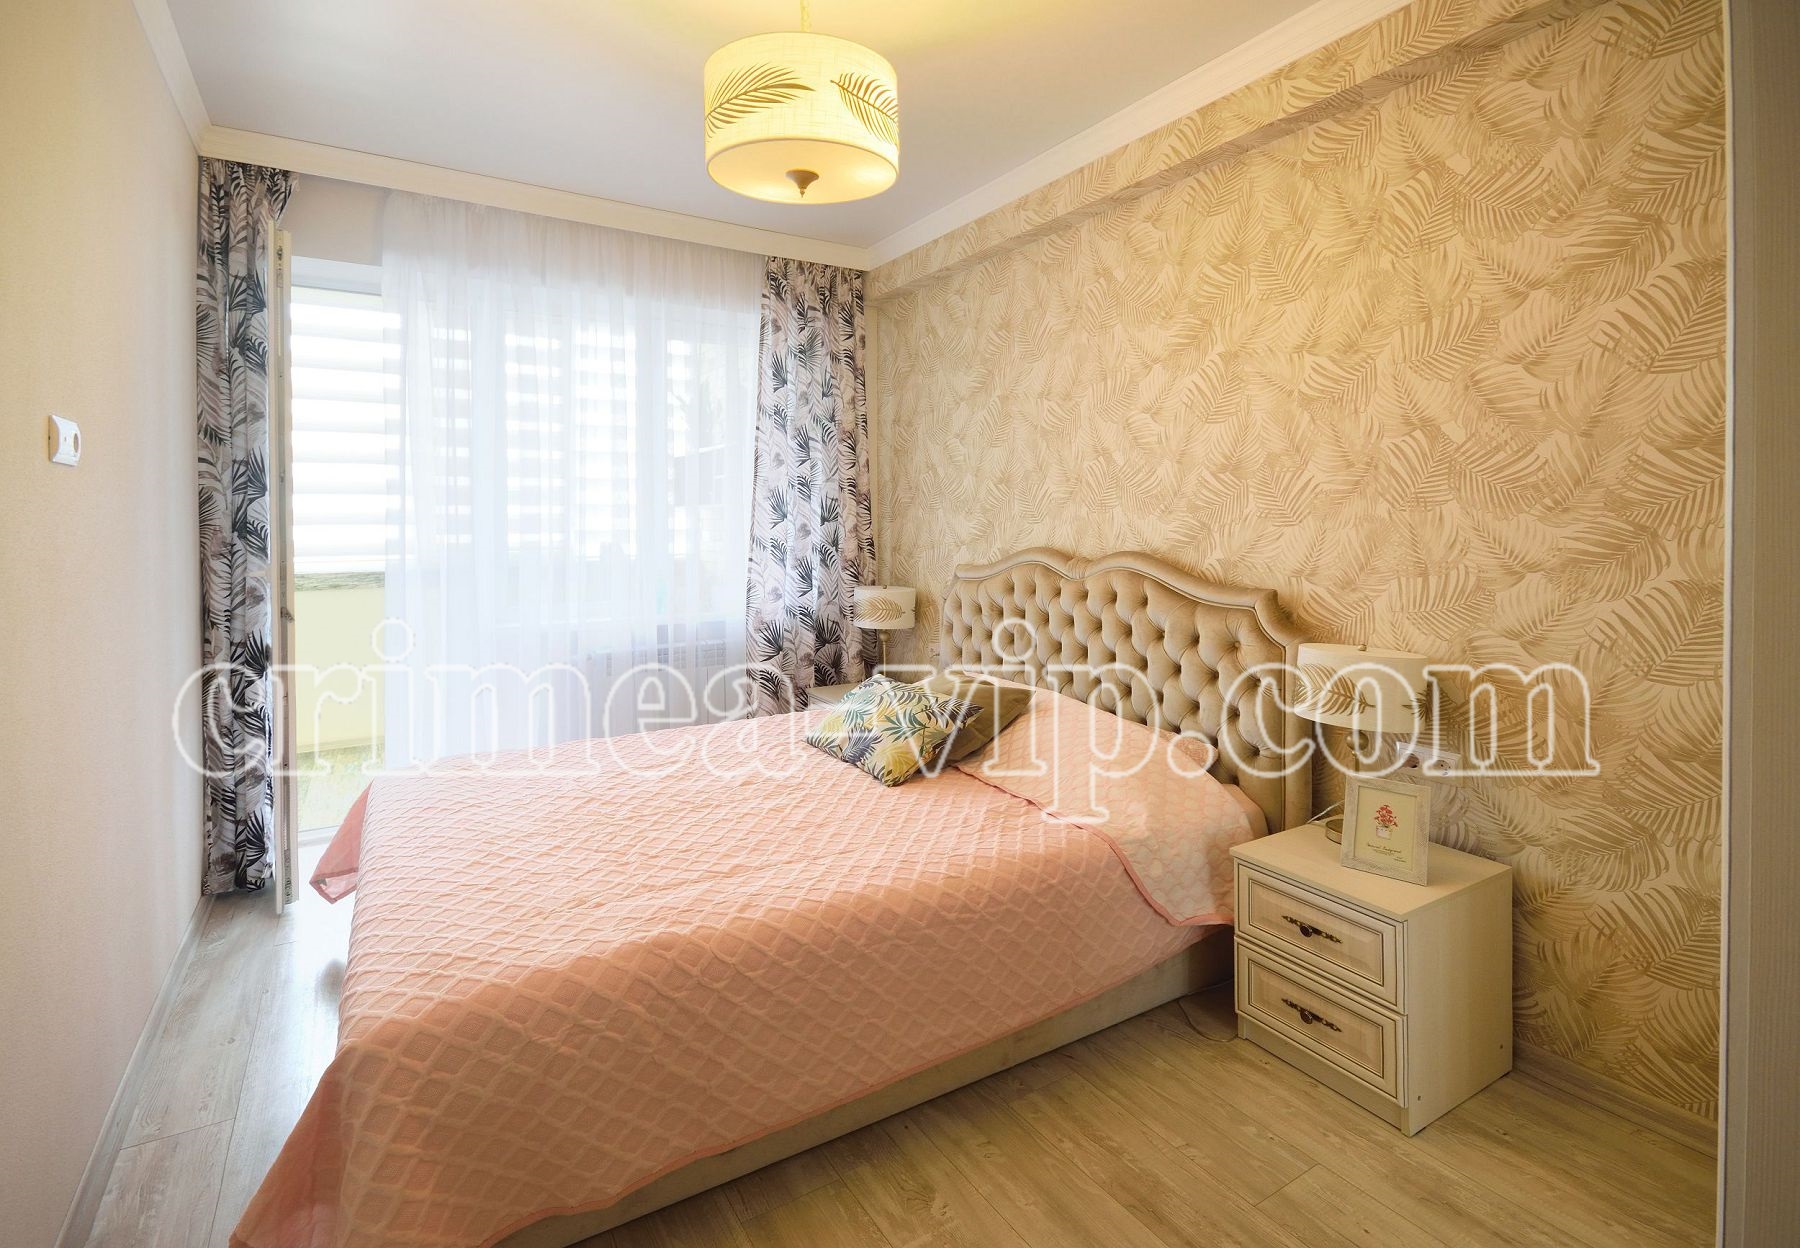 АП-3021. Аренда квартиры с 2 спальнями в Севастополе.